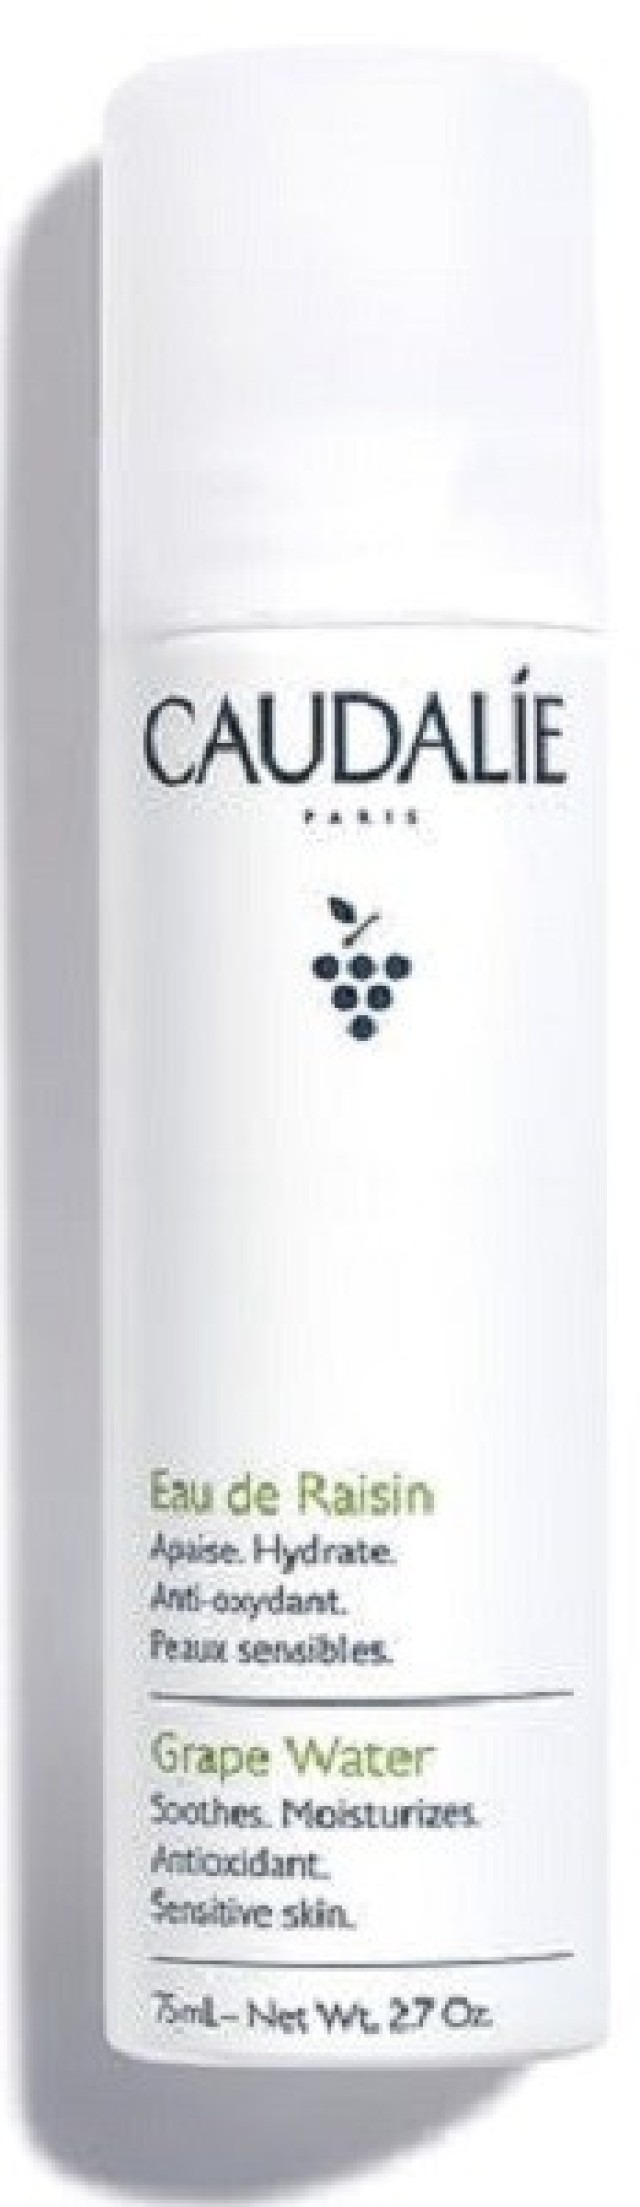 Caudalie Grape Water, Καταπραϋντικό Ενυδατικό Υγρό Spray για Ευαίσθητες Επιδερμίδες, 75ml